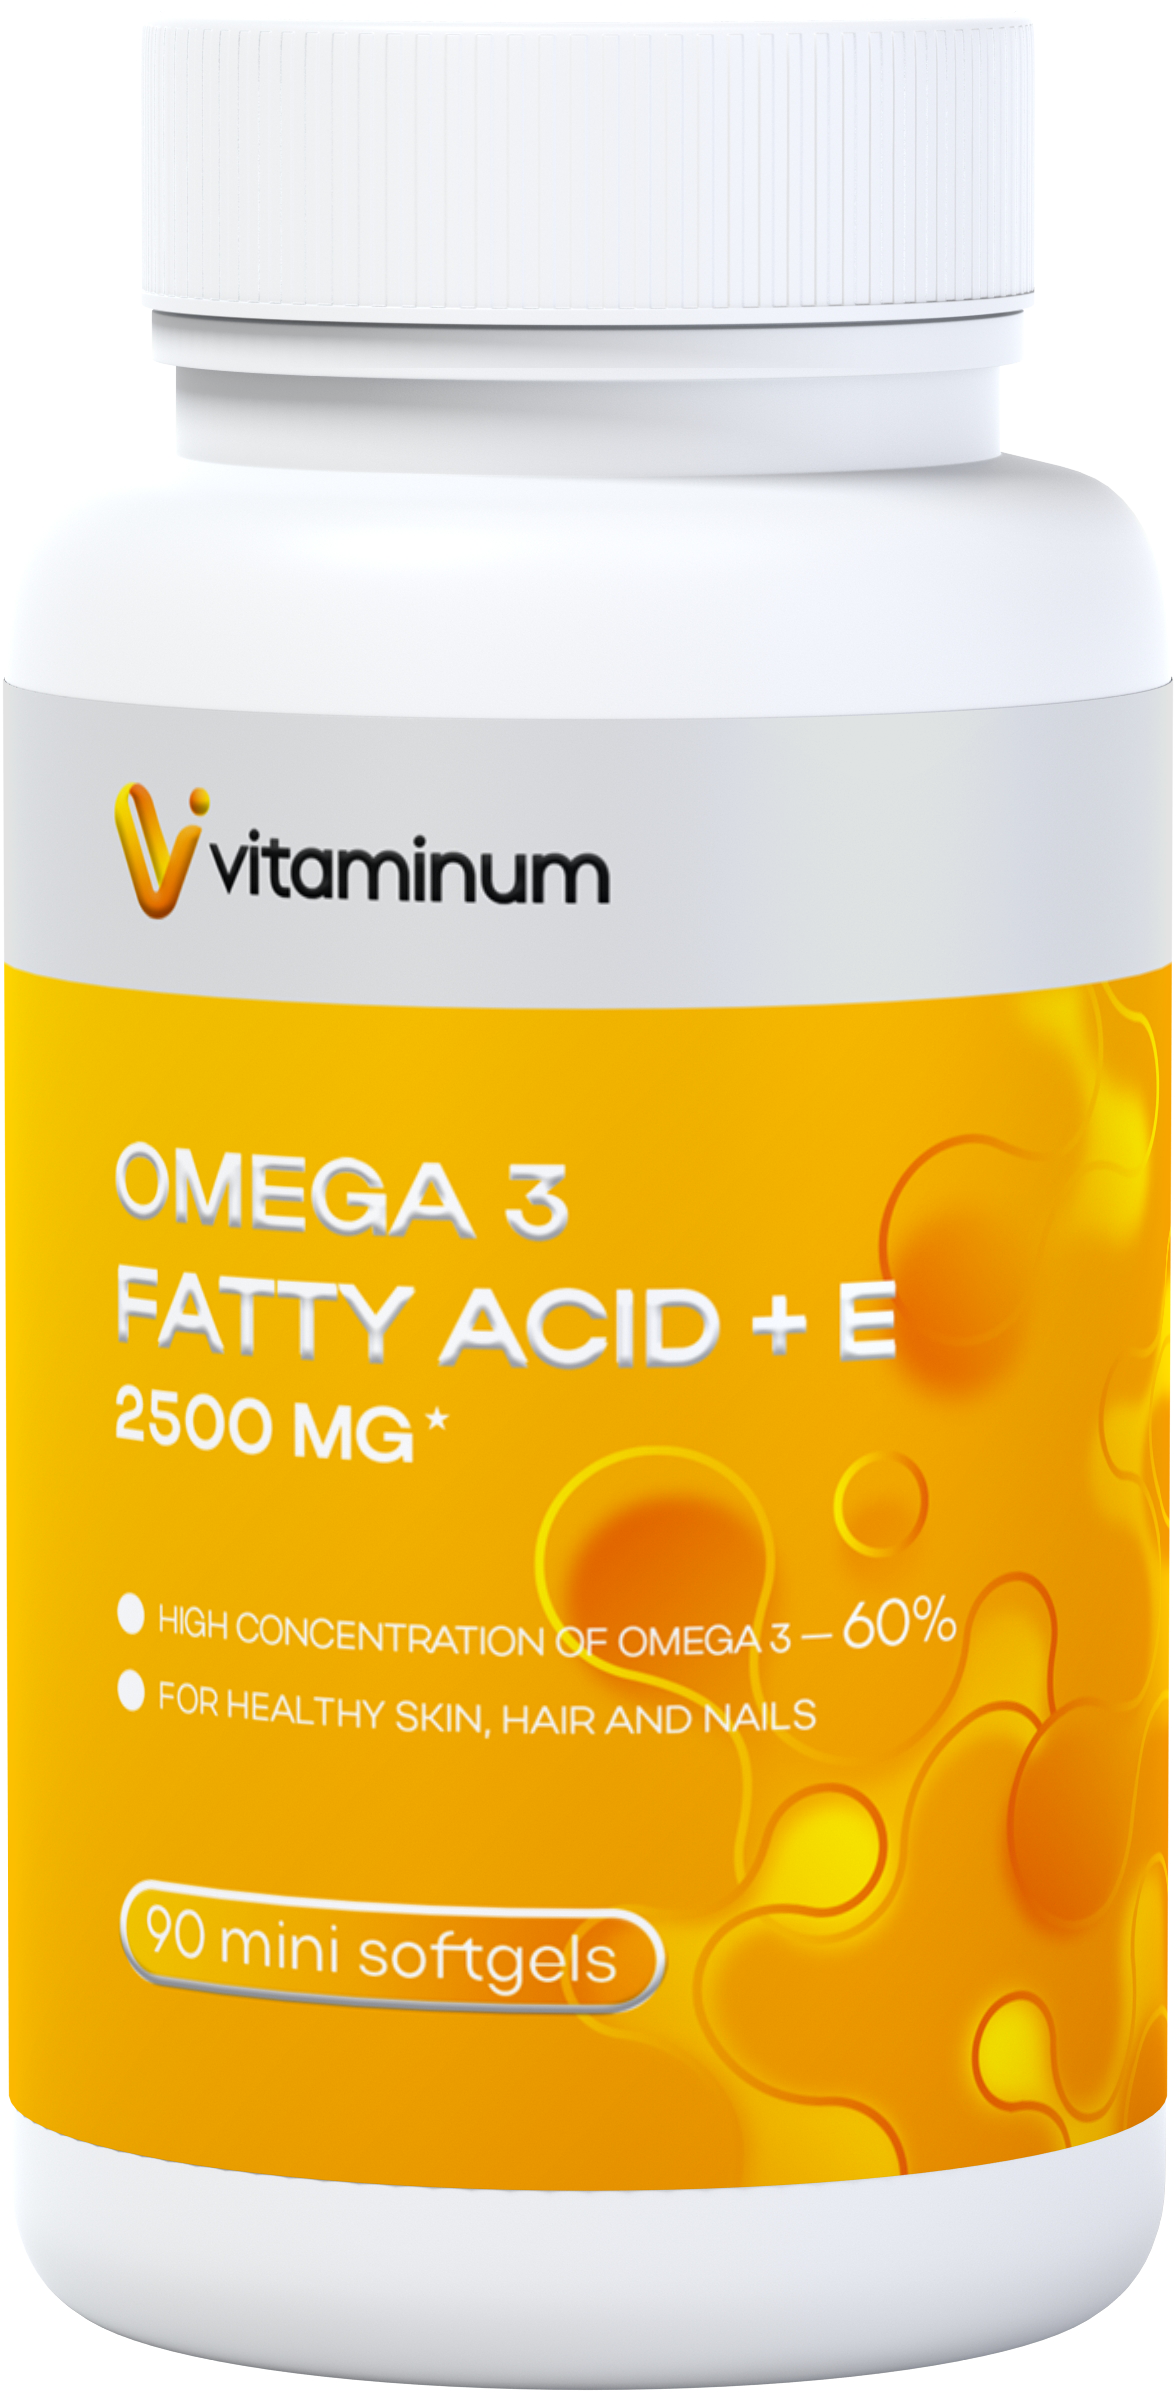  Vitaminum ОМЕГА 3 60% + витамин Е (2500 MG*) 90 капсул 700 мг   в Сочи